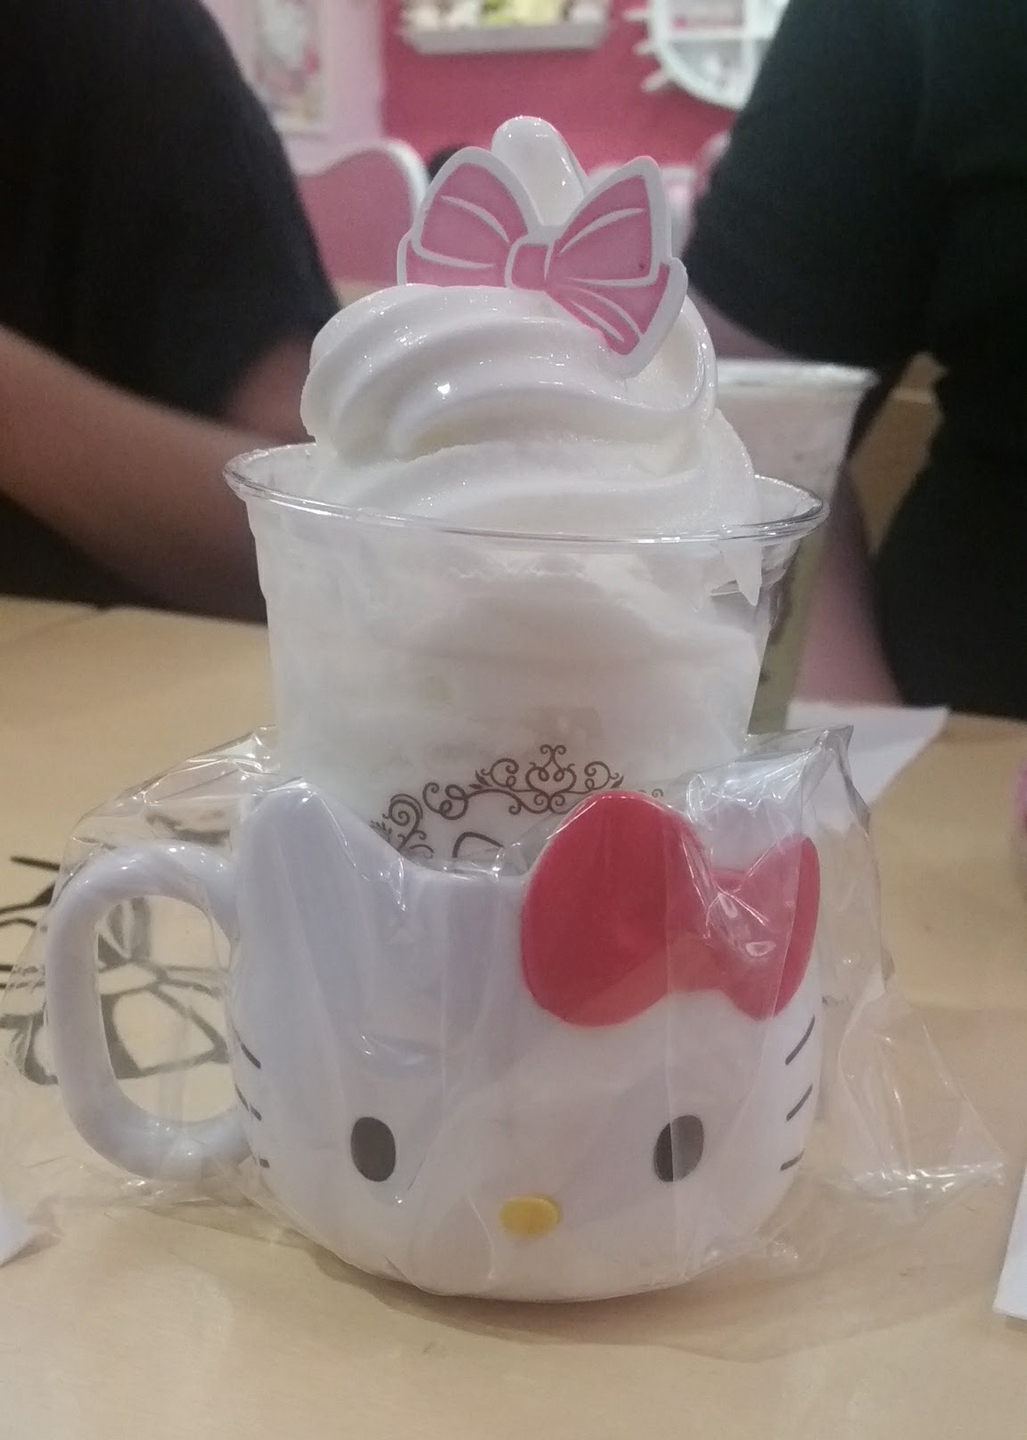 Korea Trip - Myeongdong Hello Kitty Cafe3